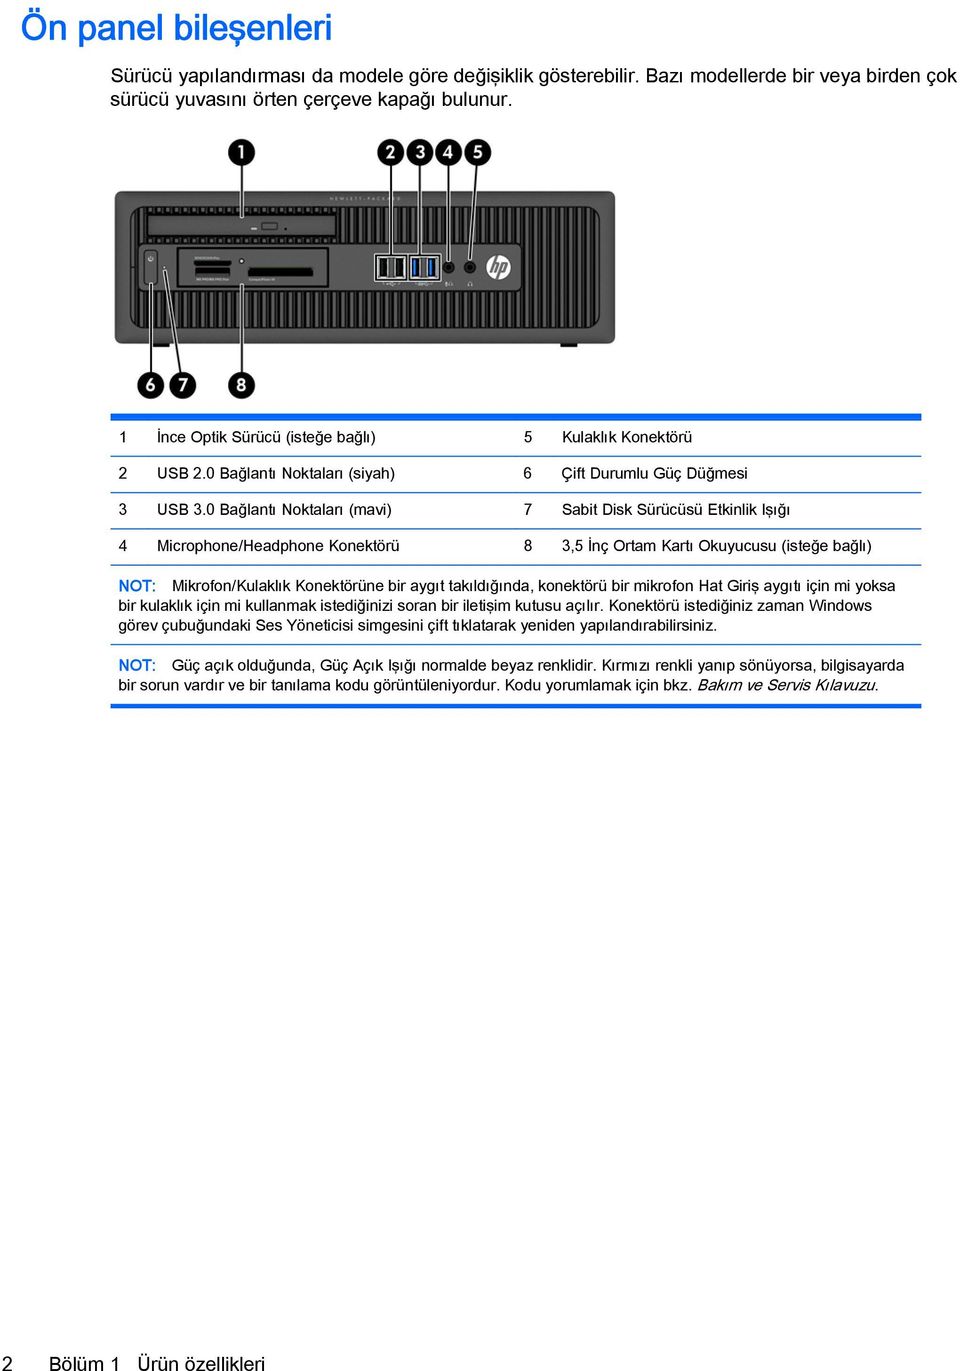 0 Bağlantı Noktaları (mavi) 7 Sabit Disk Sürücüsü Etkinlik Işığı 4 Microphone/Headphone Konektörü 8 3,5 İnç Ortam Kartı Okuyucusu (isteğe bağlı) NOT: Mikrofon/Kulaklık Konektörüne bir aygıt